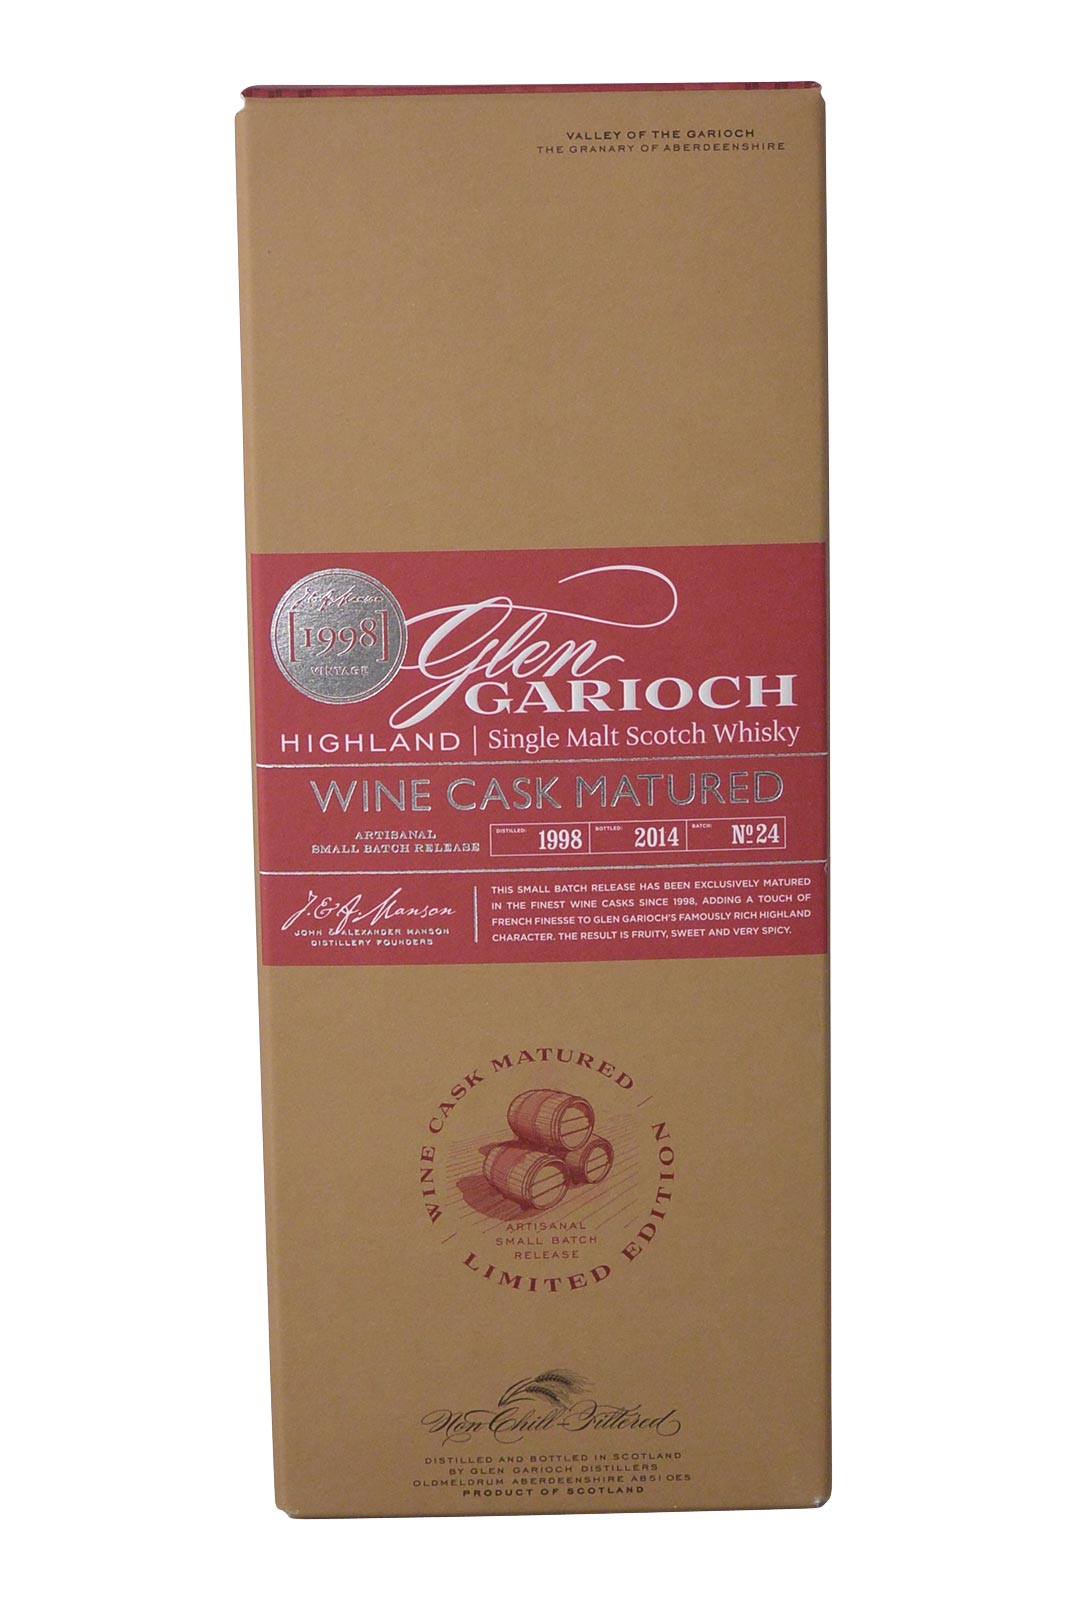 Glen Garioch Wine Cask Maturité 1998/2014